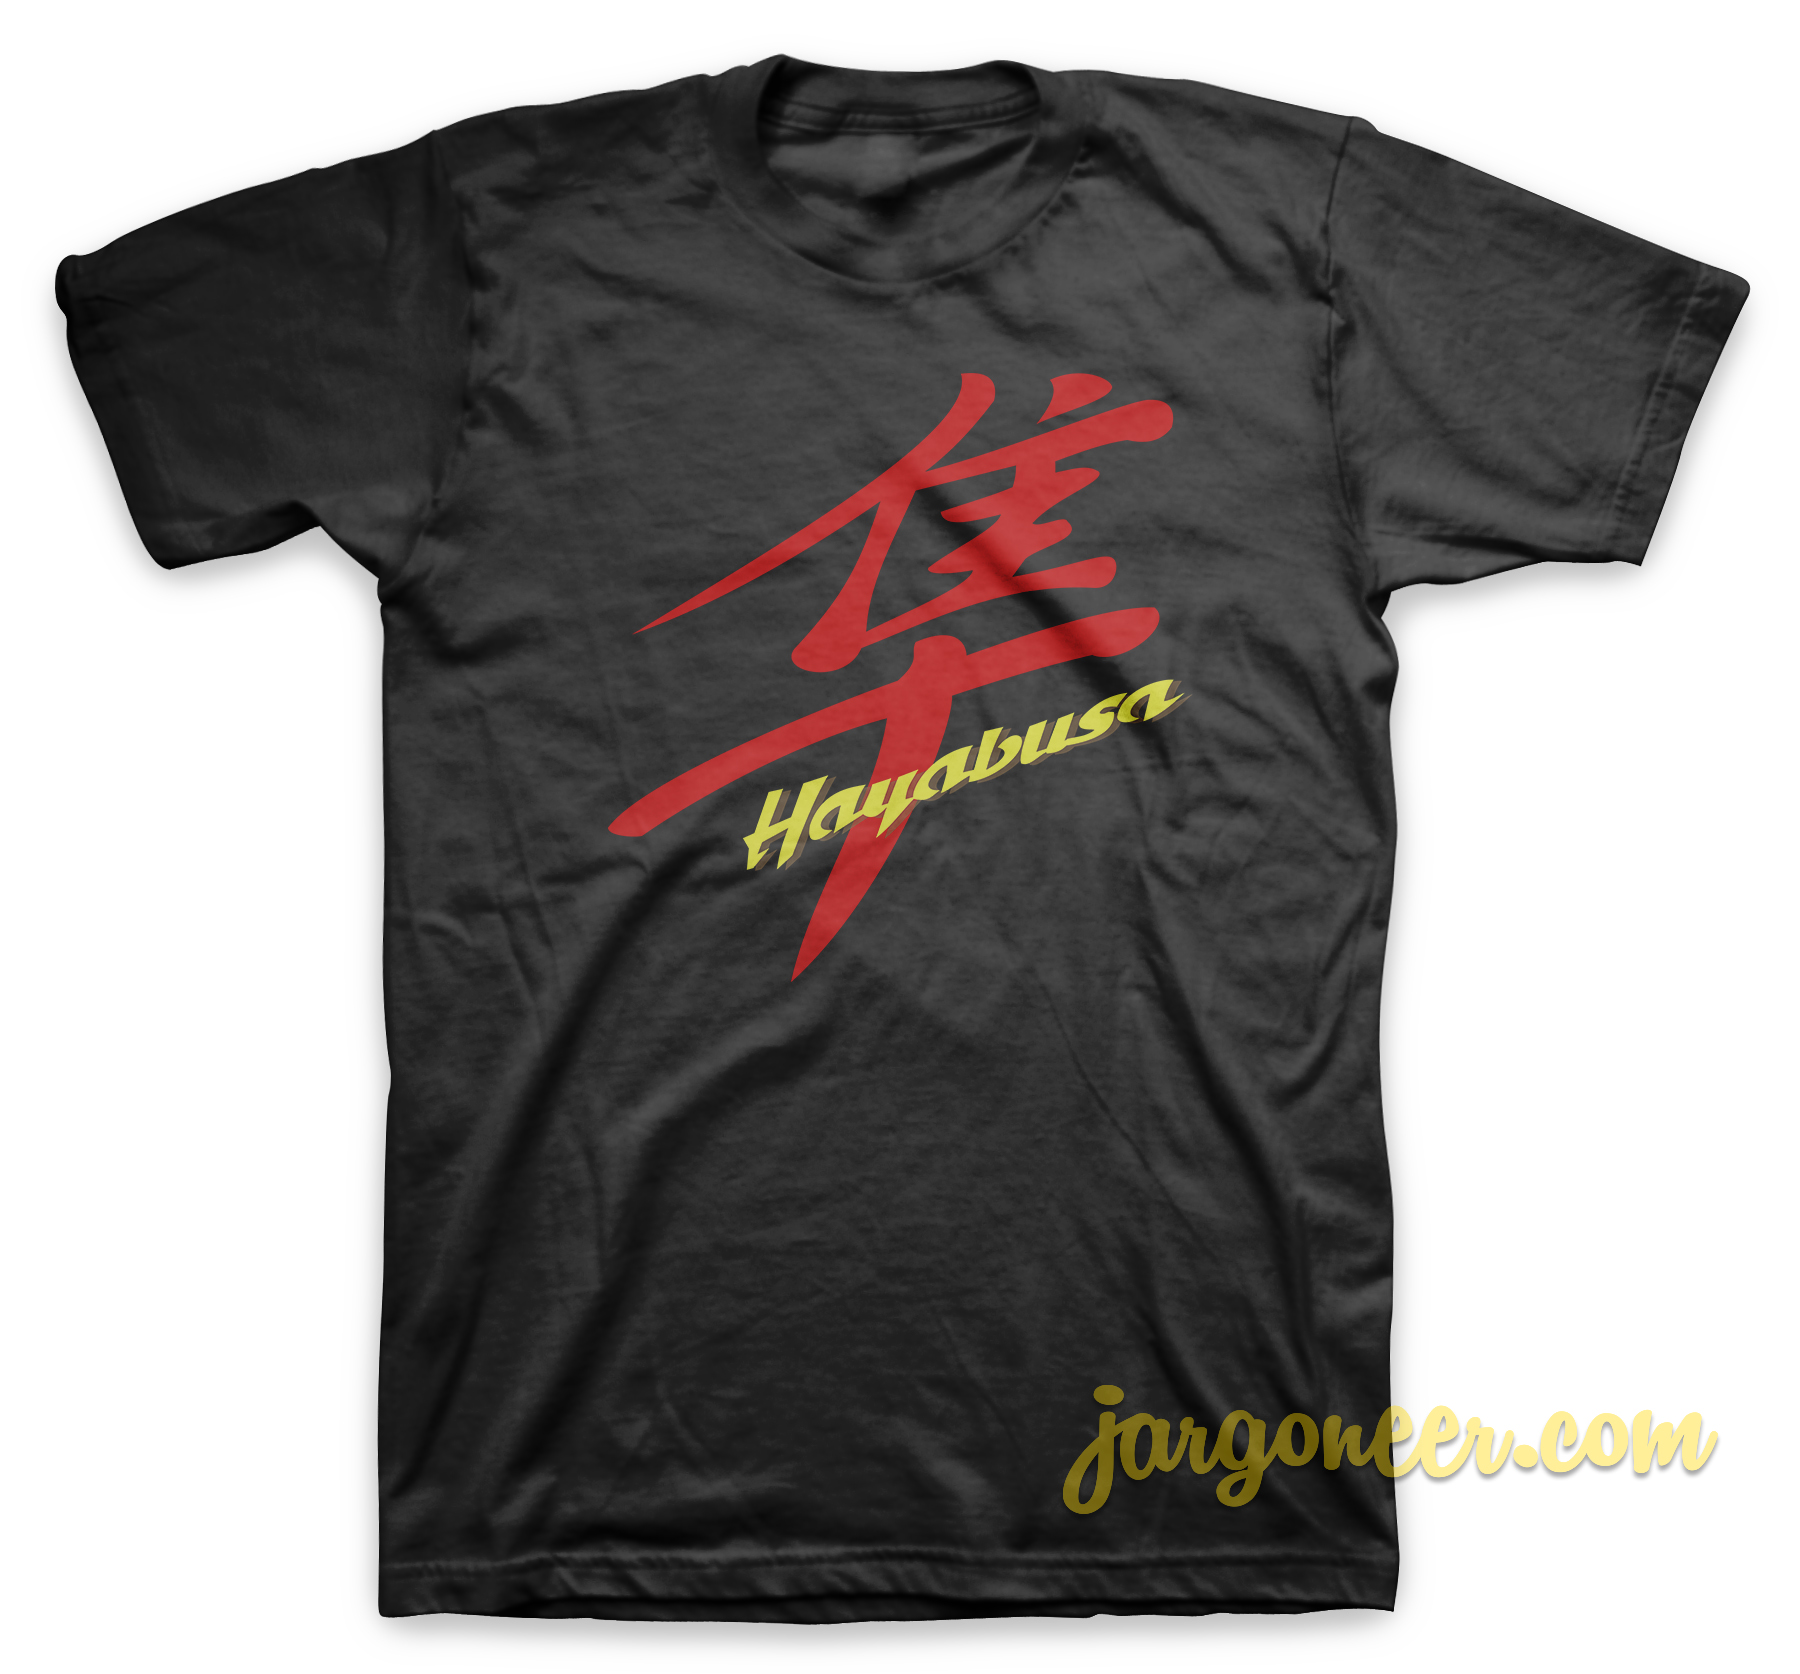 Hayabusa Black T Shirt - Shop Unique Graphic Cool Shirt Designs